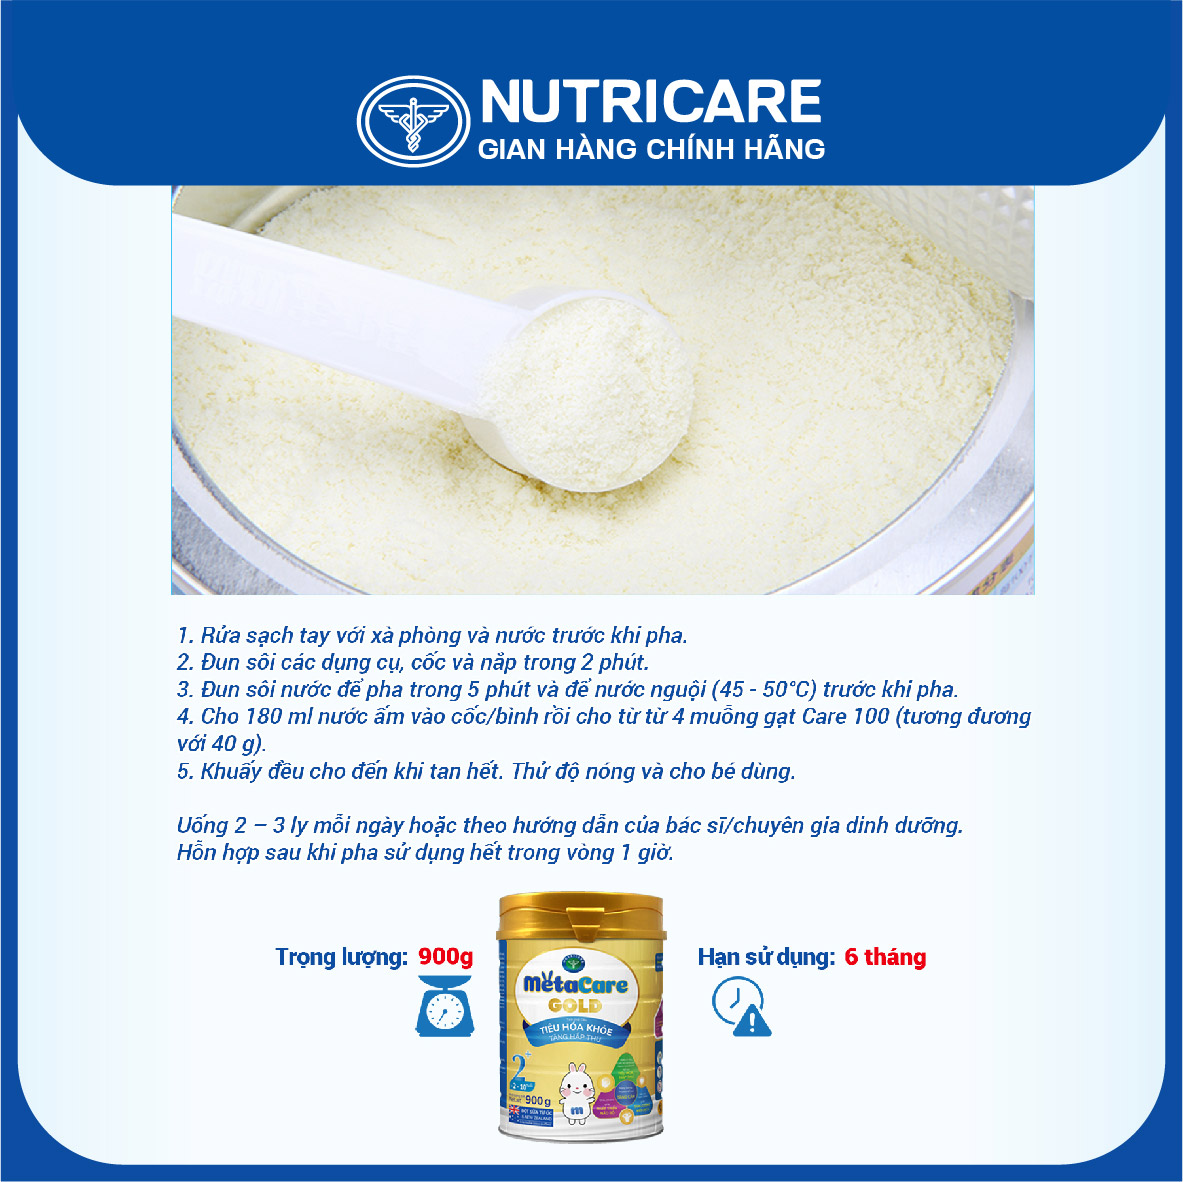 Sữa bột Nutricare MetaCare Gold 2+ tiêu hóa khỏe tăng hấp thu 400g